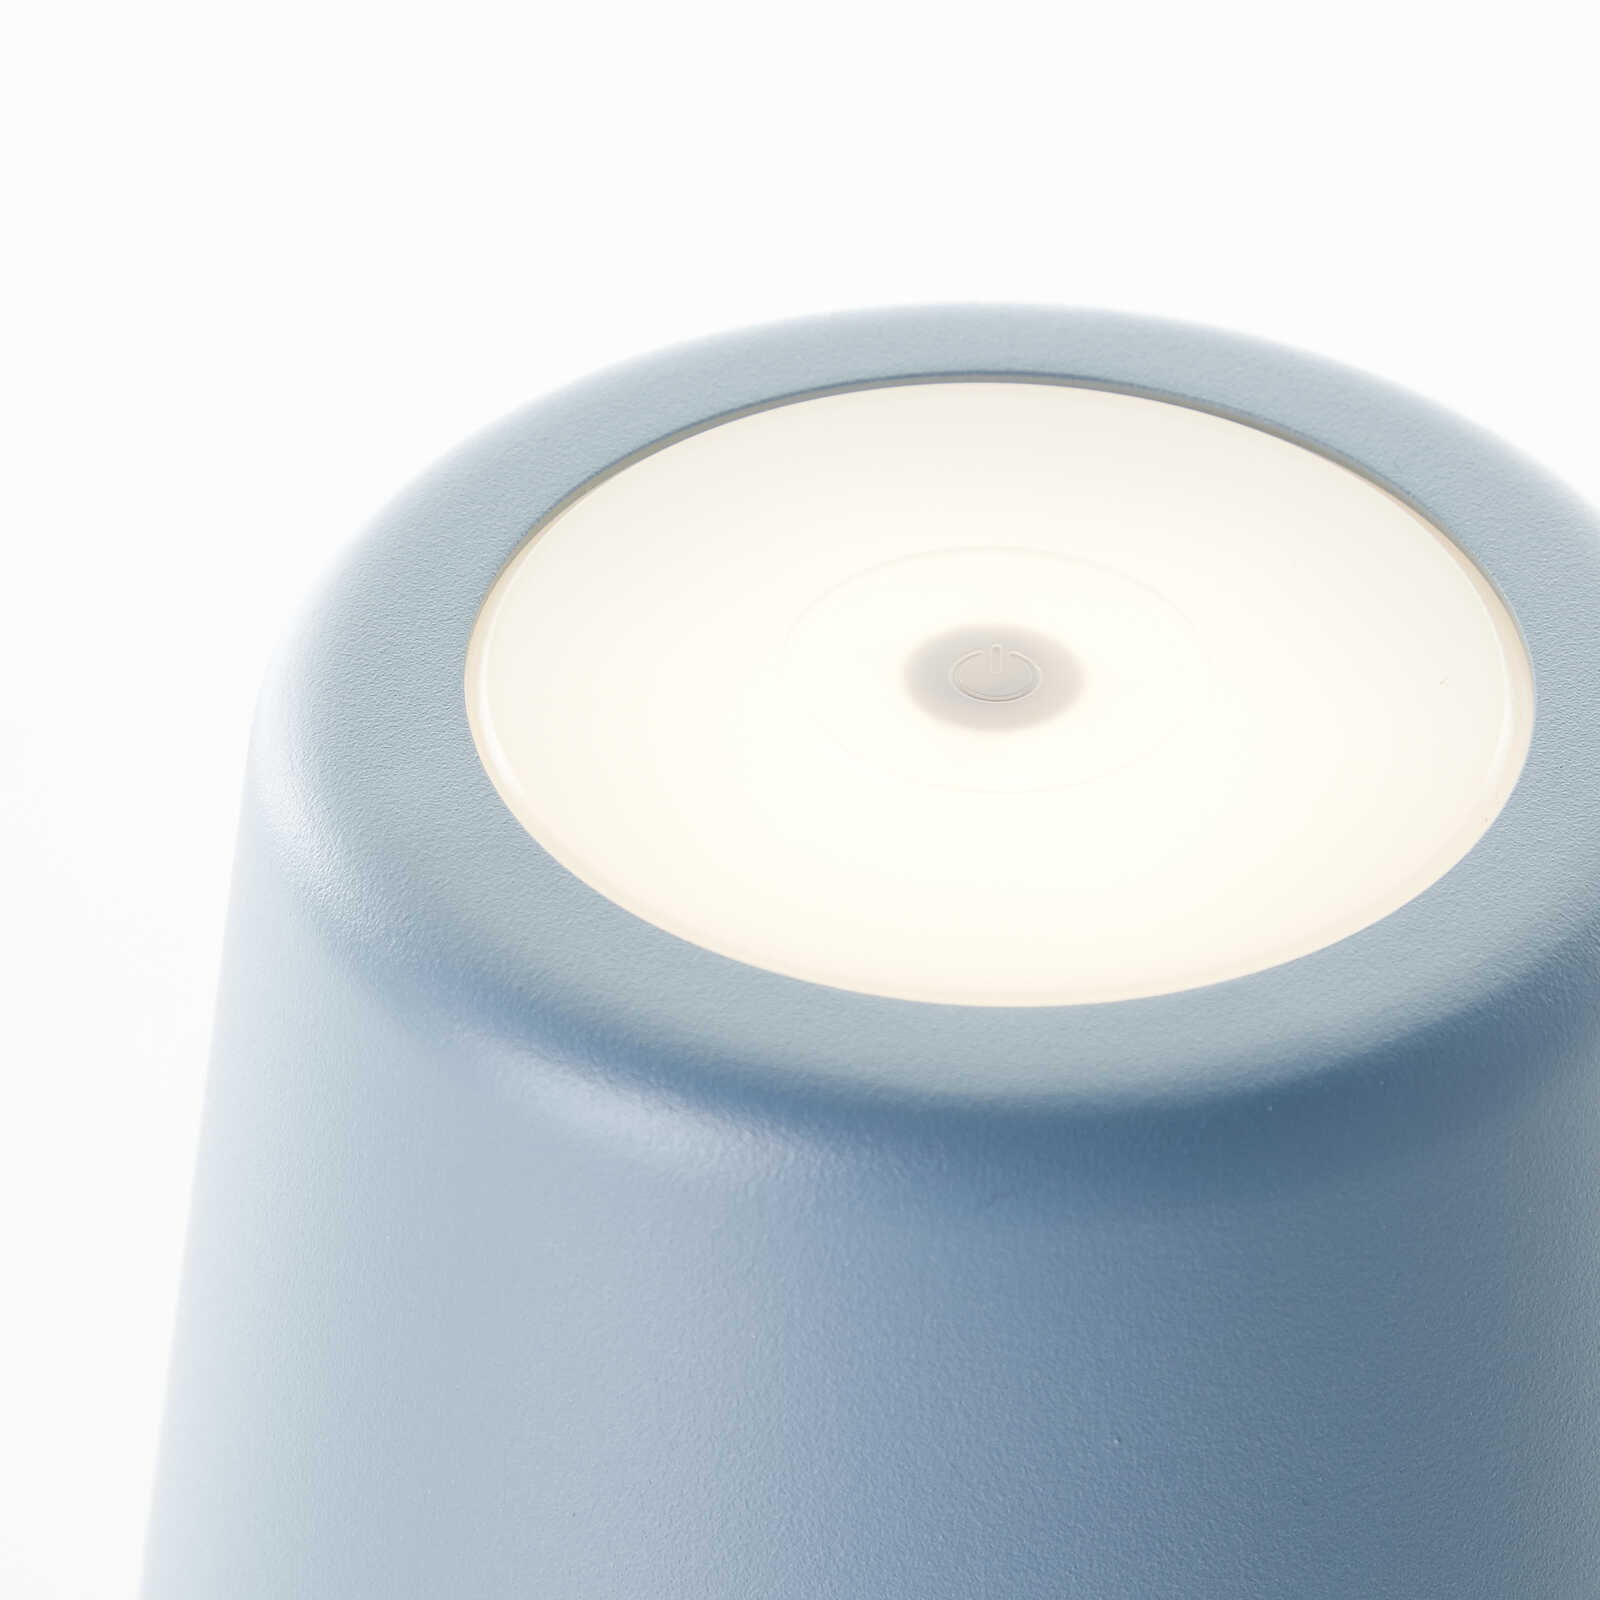             Lampe de table en métal - Cosy 1 - Bleu
        